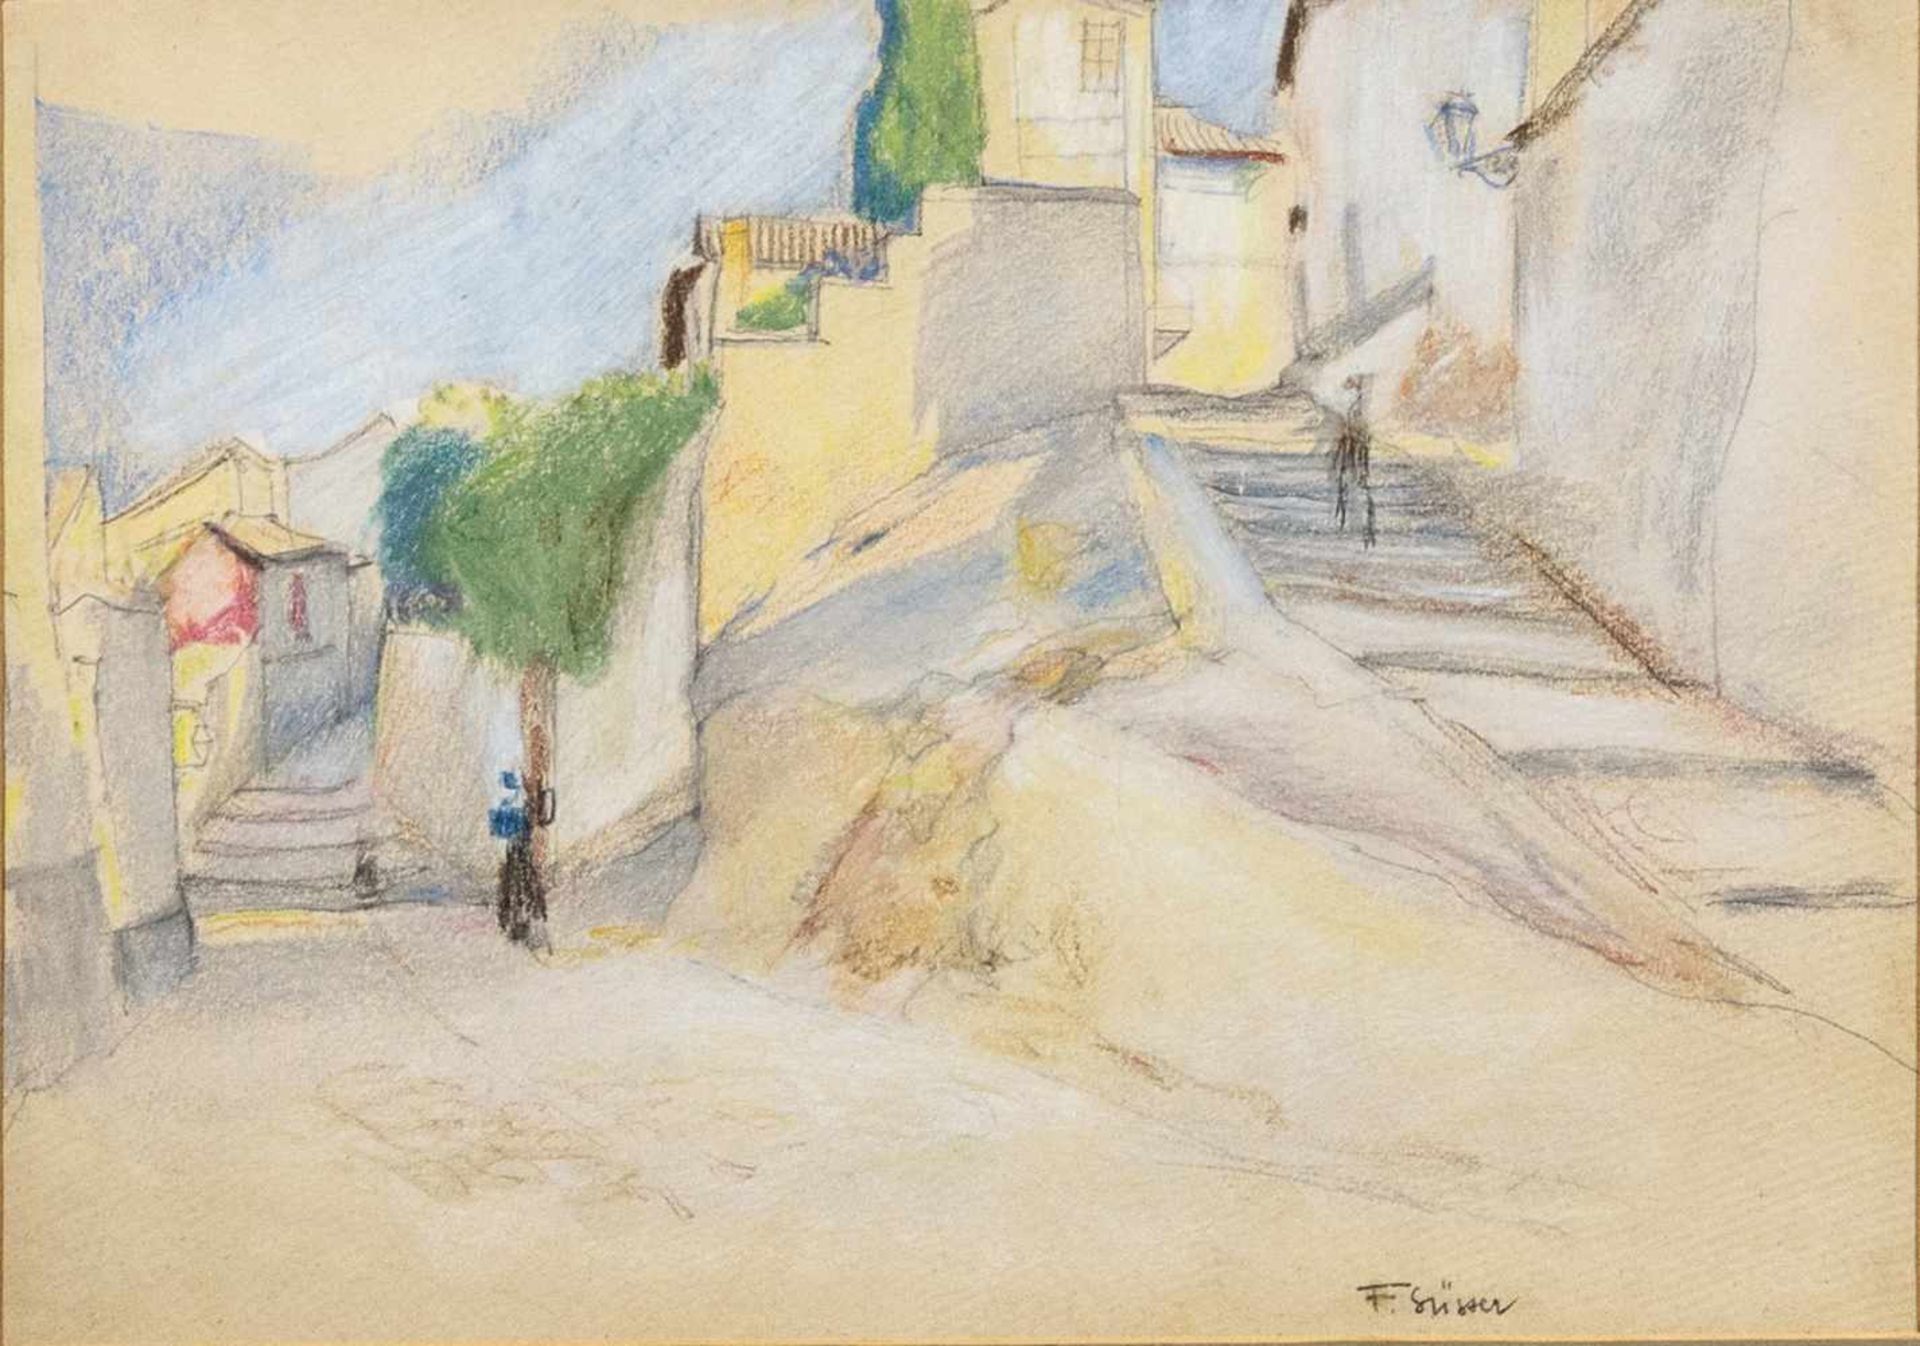 Süsser, Frantisek (1890 - 1956)"Häuser im Dorf", Zeichnung mit Farbkreide, 24 x 33,5 cm, rechts